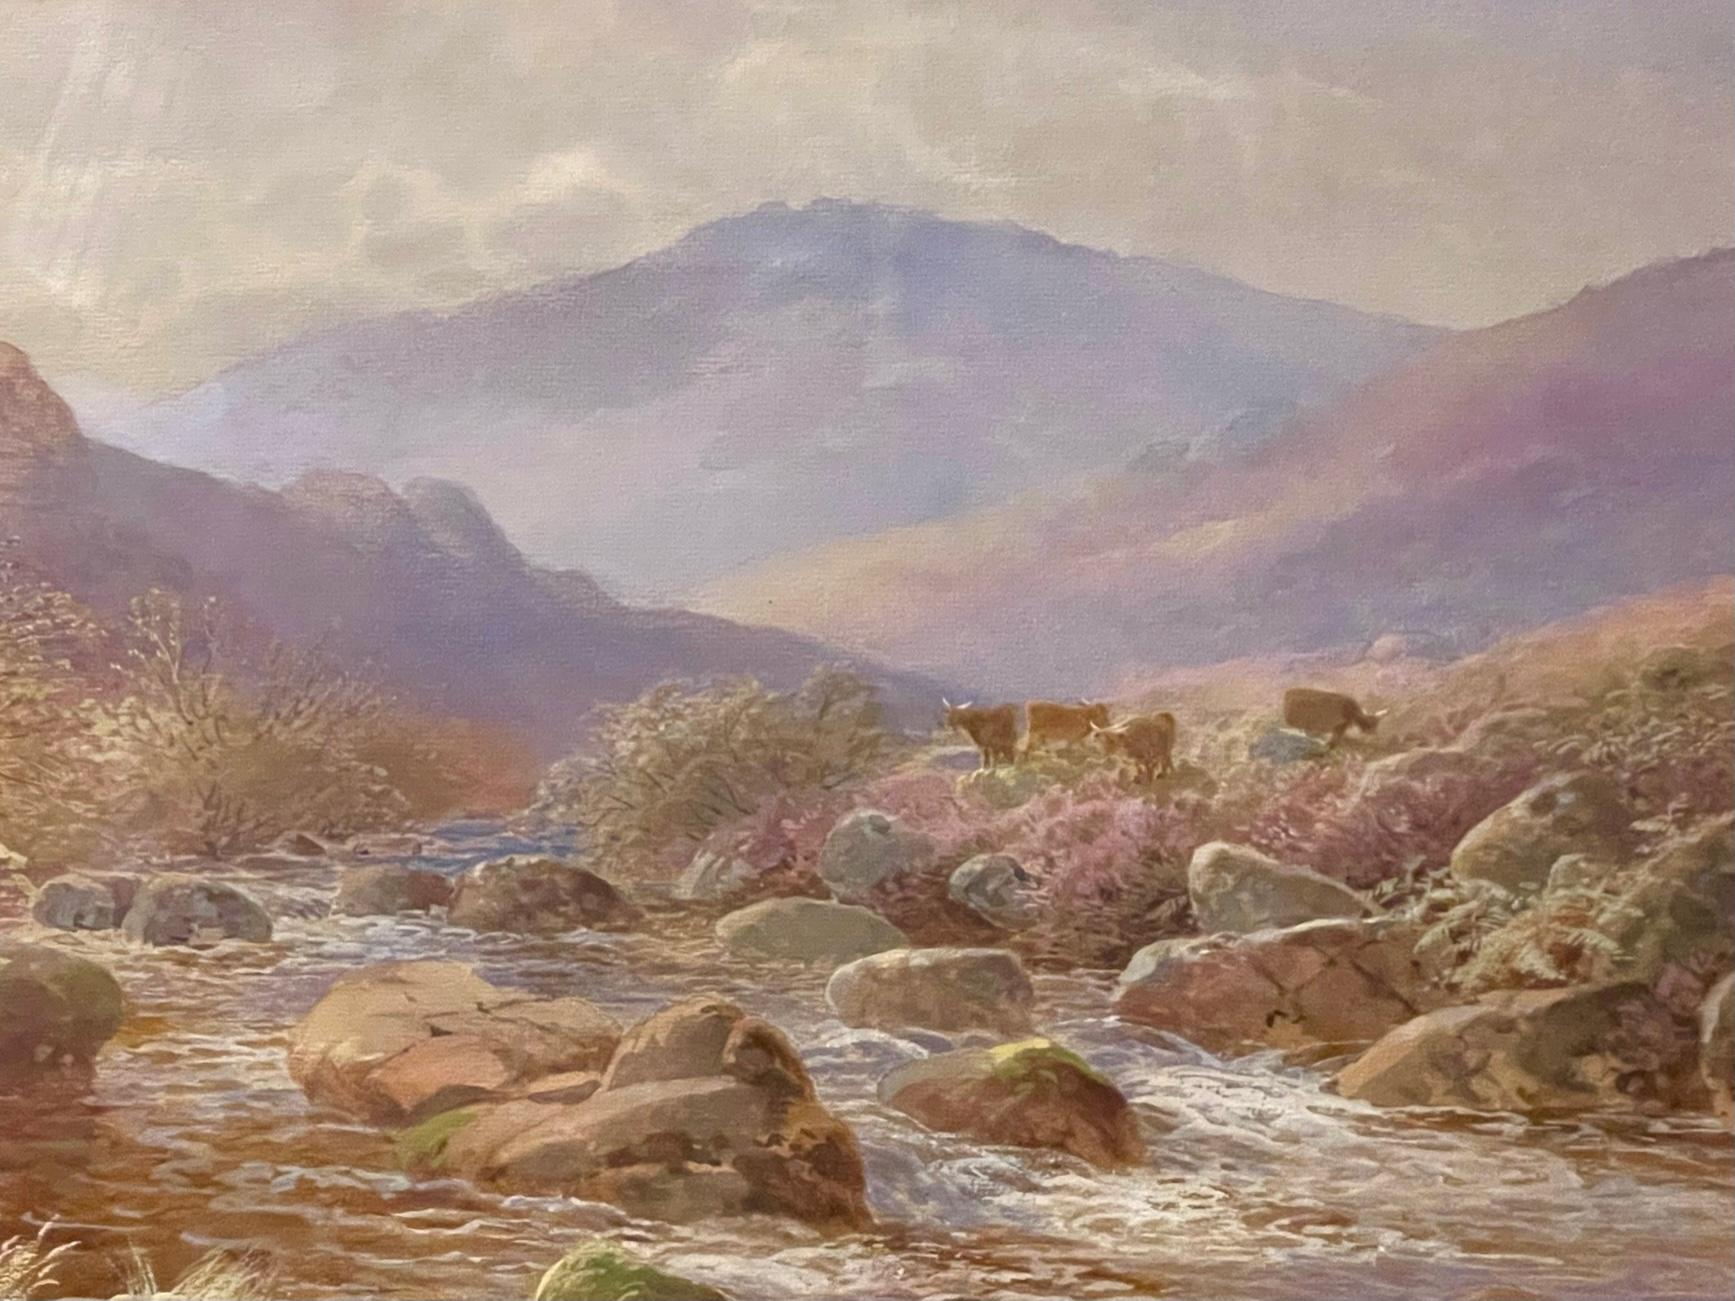 Schottische Hochlandberge, Stromschnellen und Heidekraut auf einem Hügel mit Kühen - dieses impressionistische Aquarell aus dem 19. Jahrhundert ist hell und frisch.  Signiert vom Künstler John Barrett (1822-1898) unten links.  Dieses Gemälde trägt